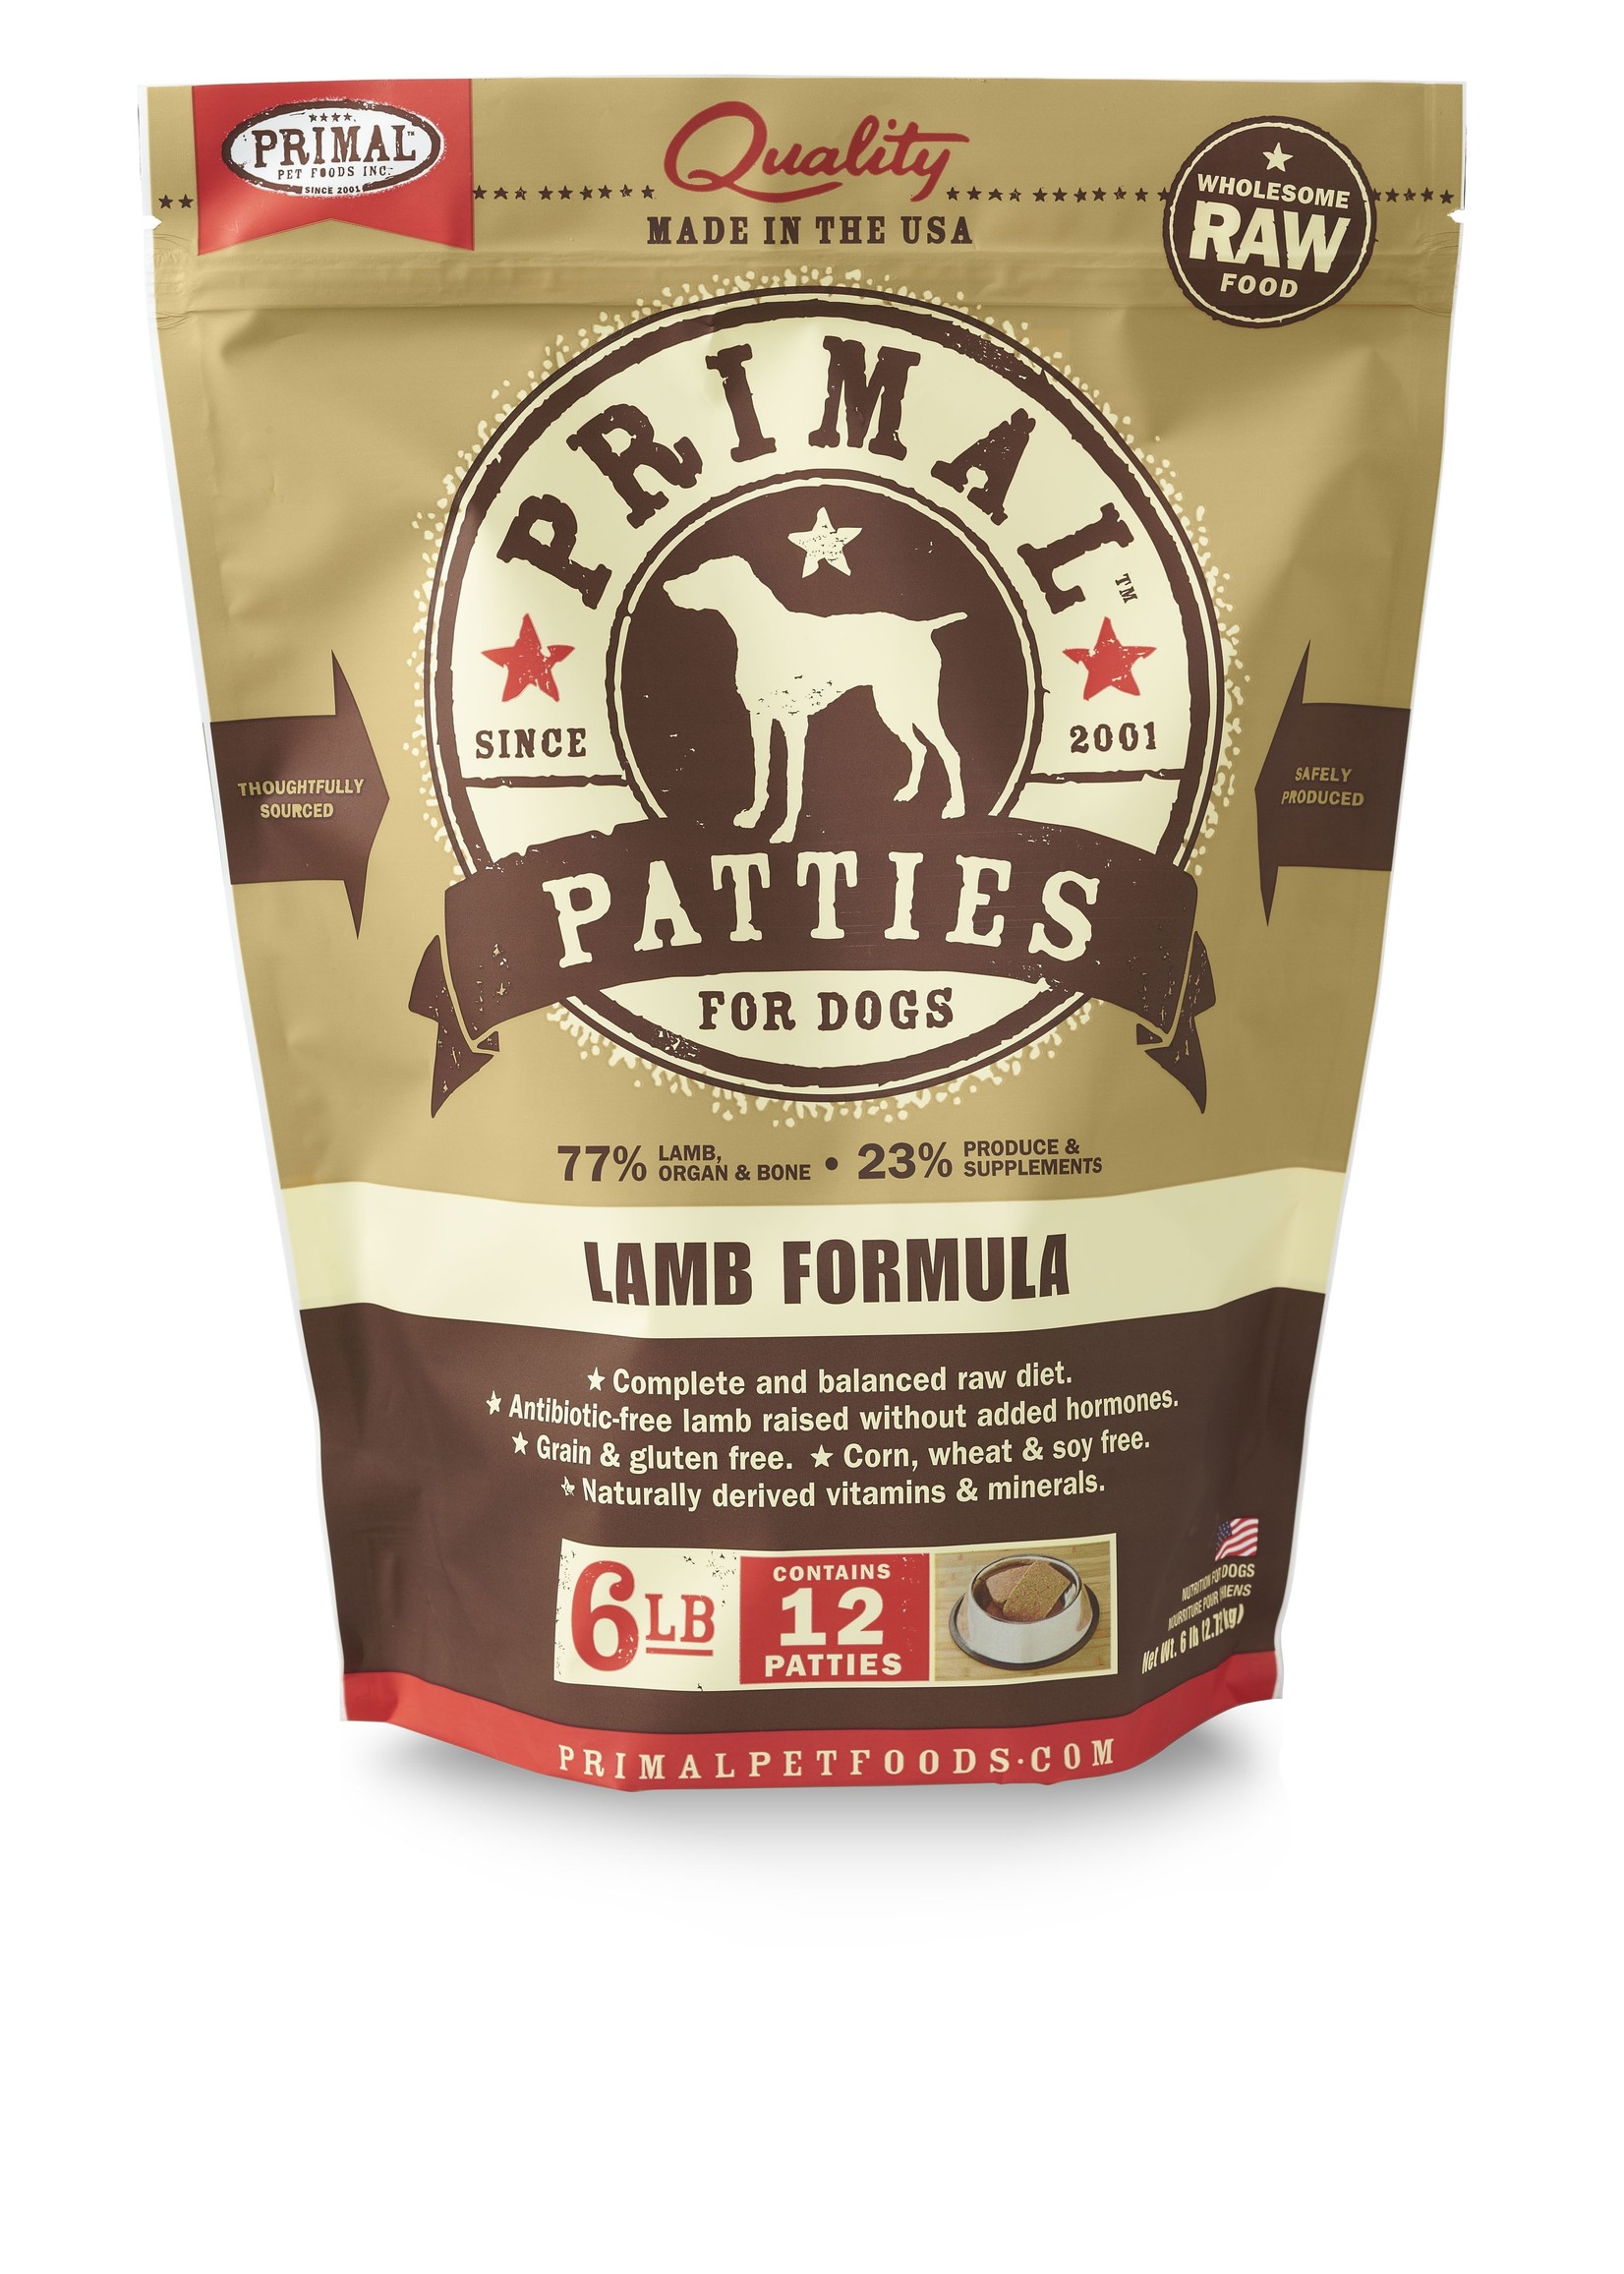 Primal Pet Foods Primal Raw Frozen Canine Patties